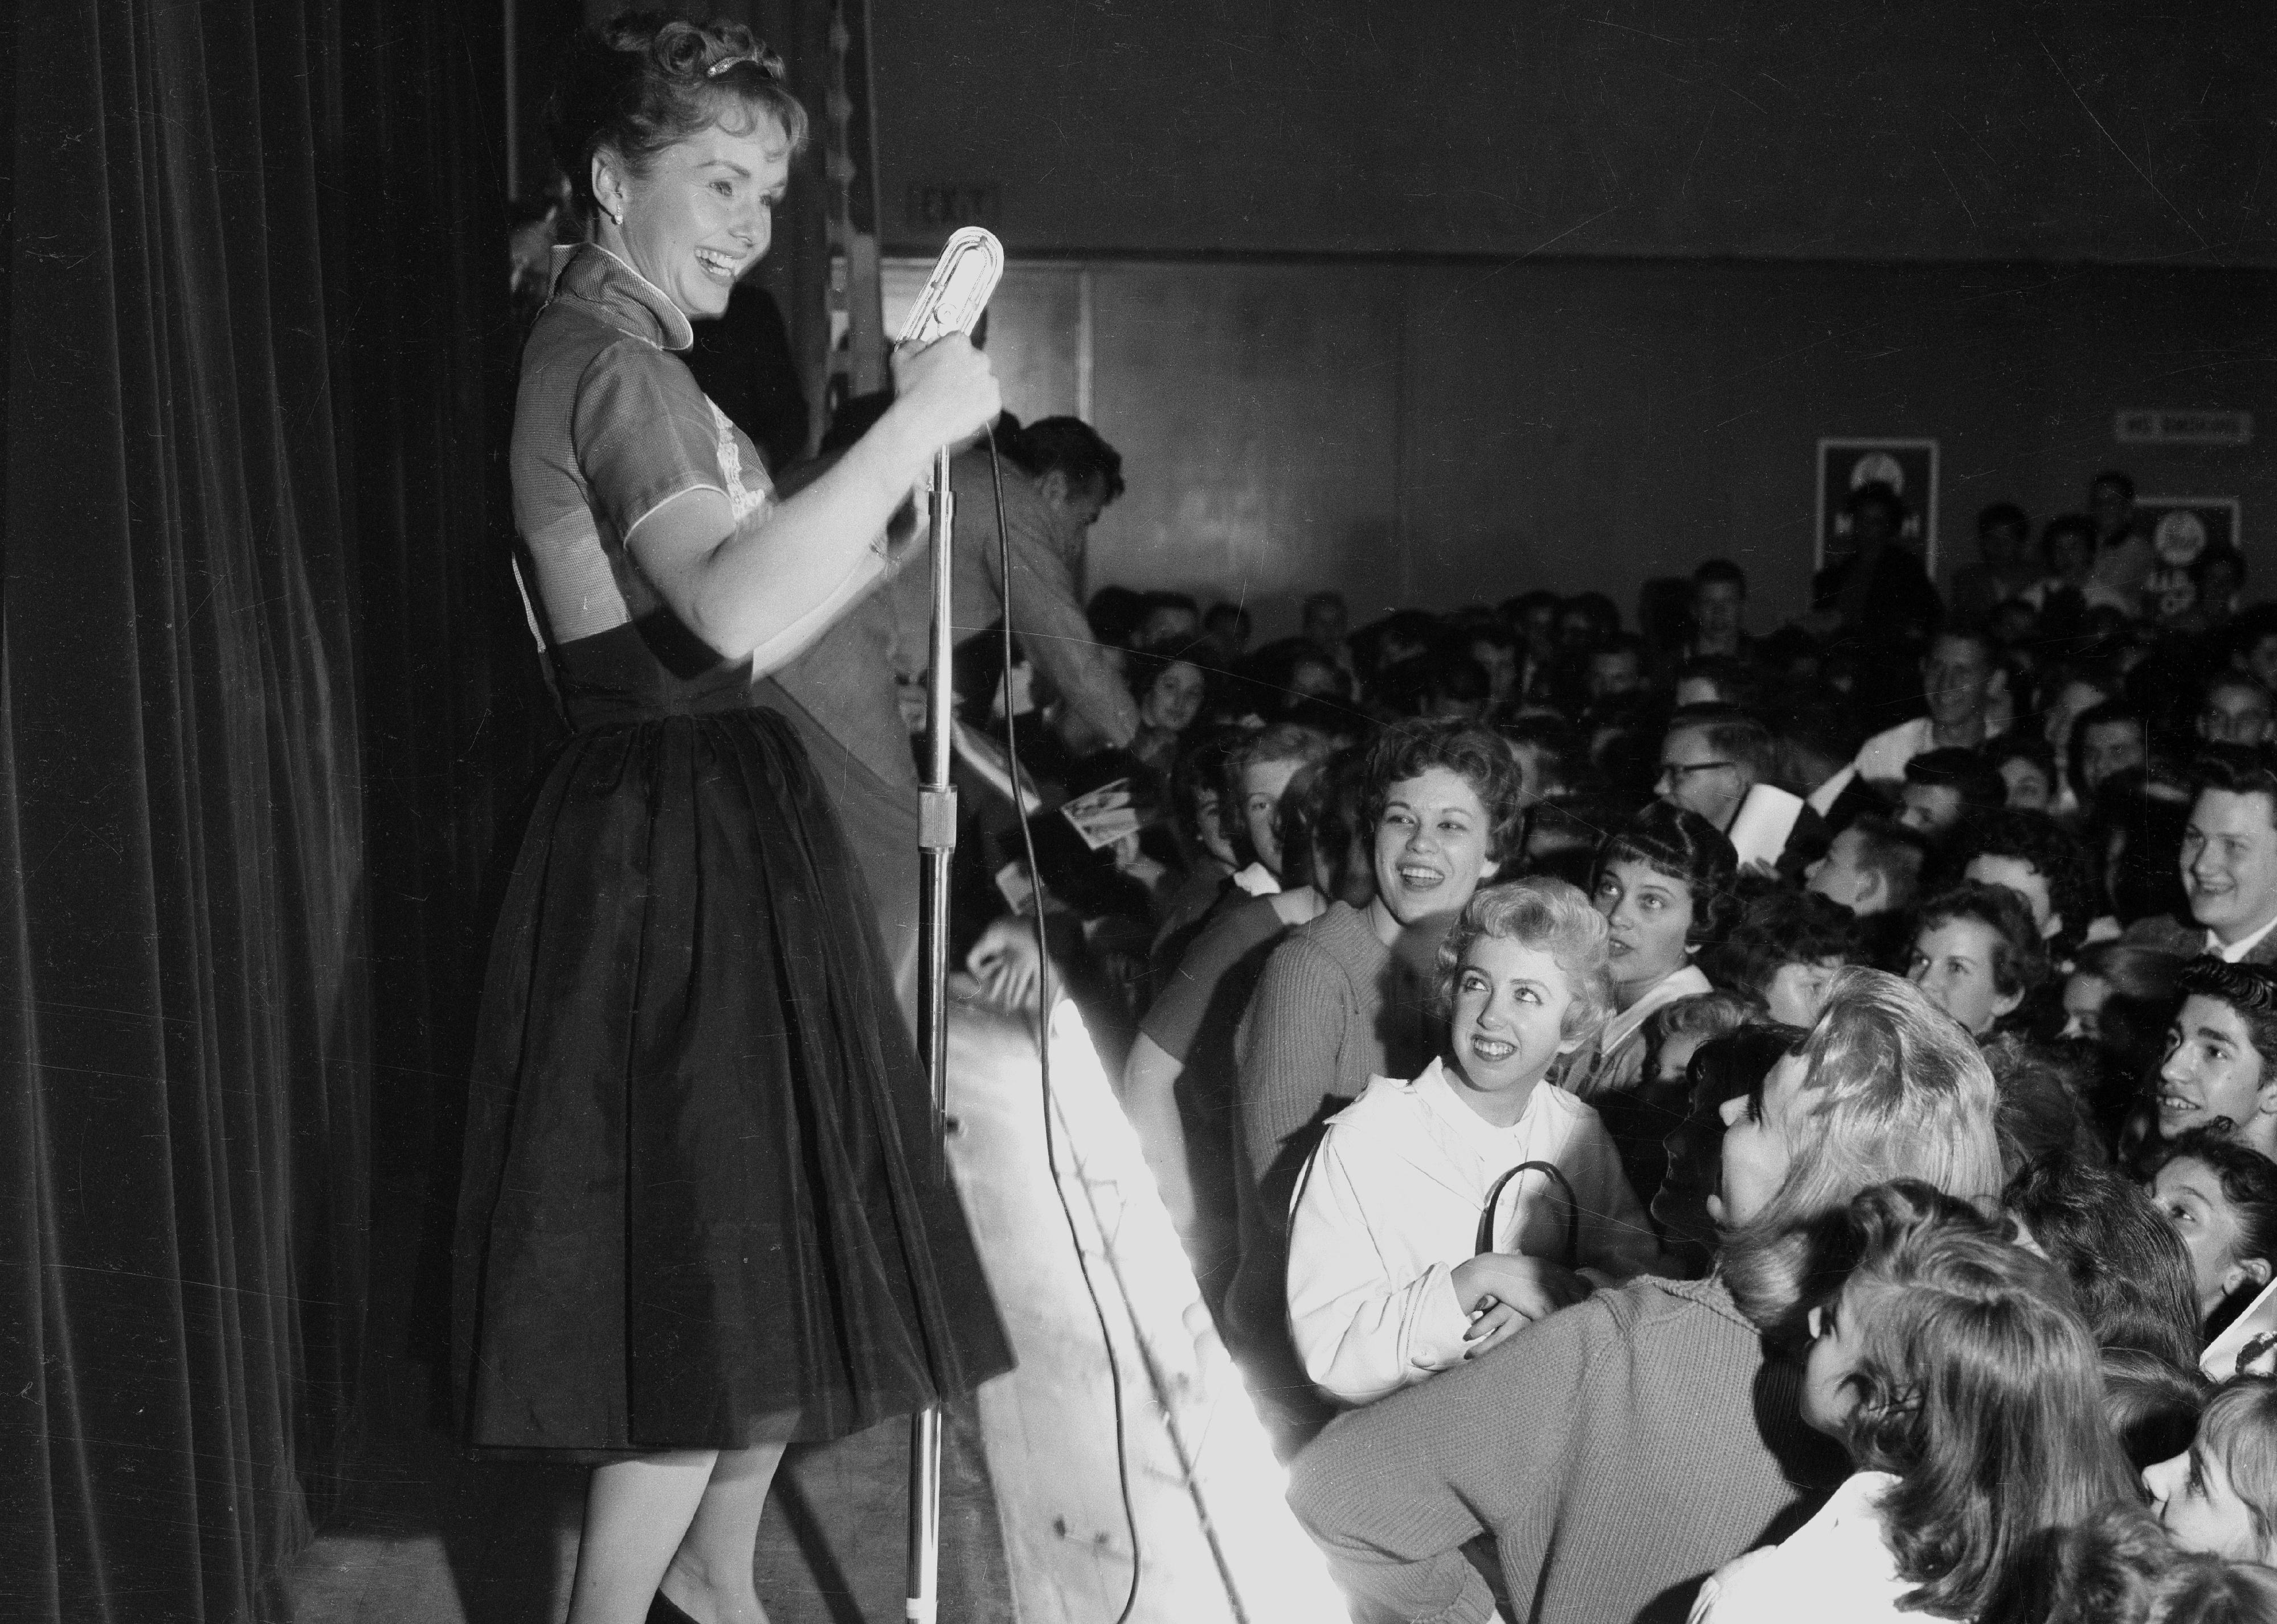 Debbie Reynolds performing onstage.